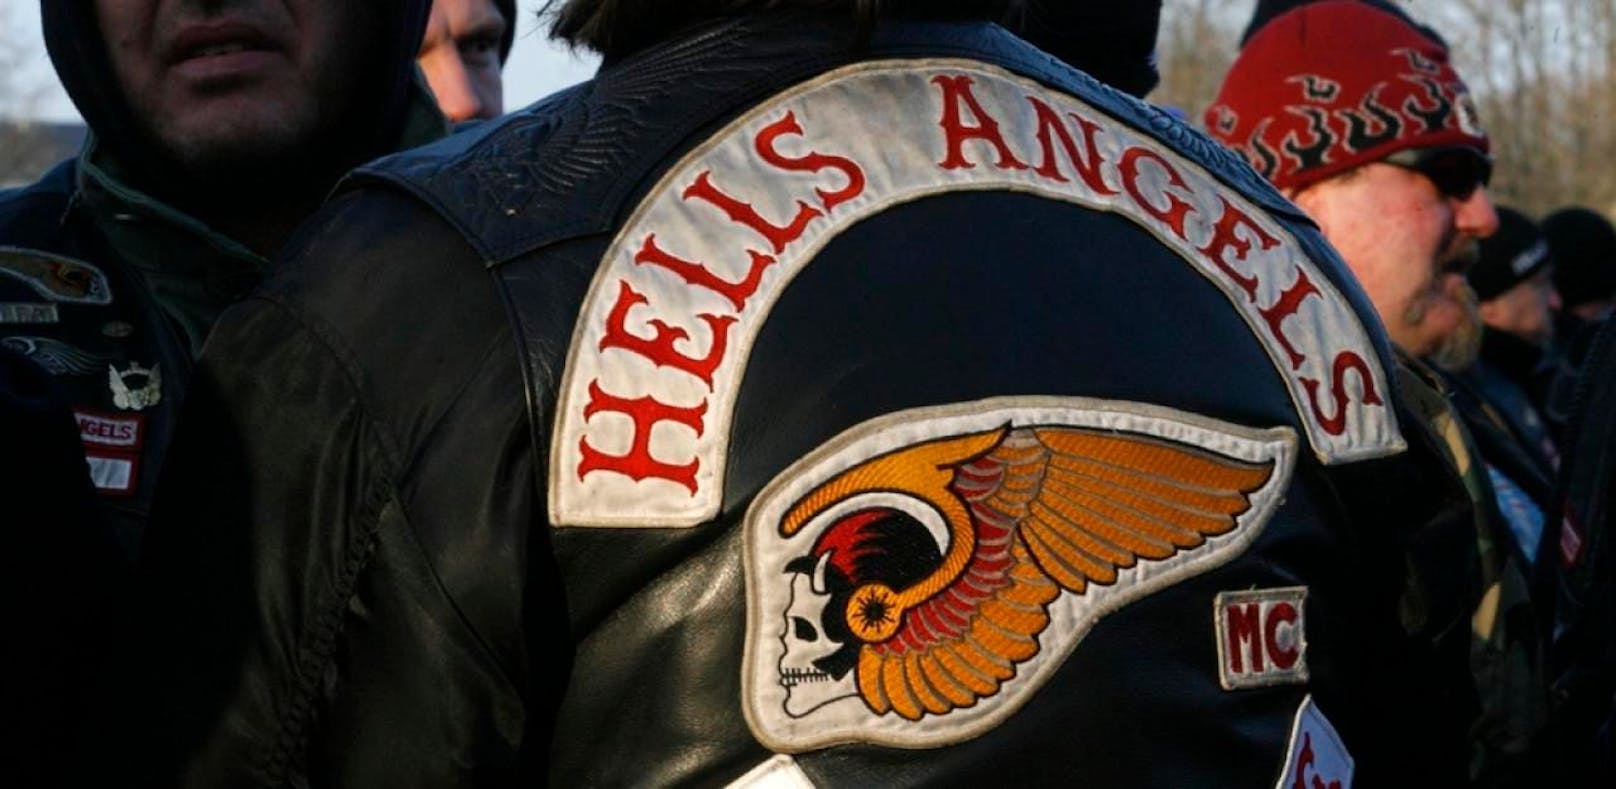 Die Hells Angels zählen neben den Bandidos zu den größten und bekanntesten Motorradklubs der Welt. Symbolfoto